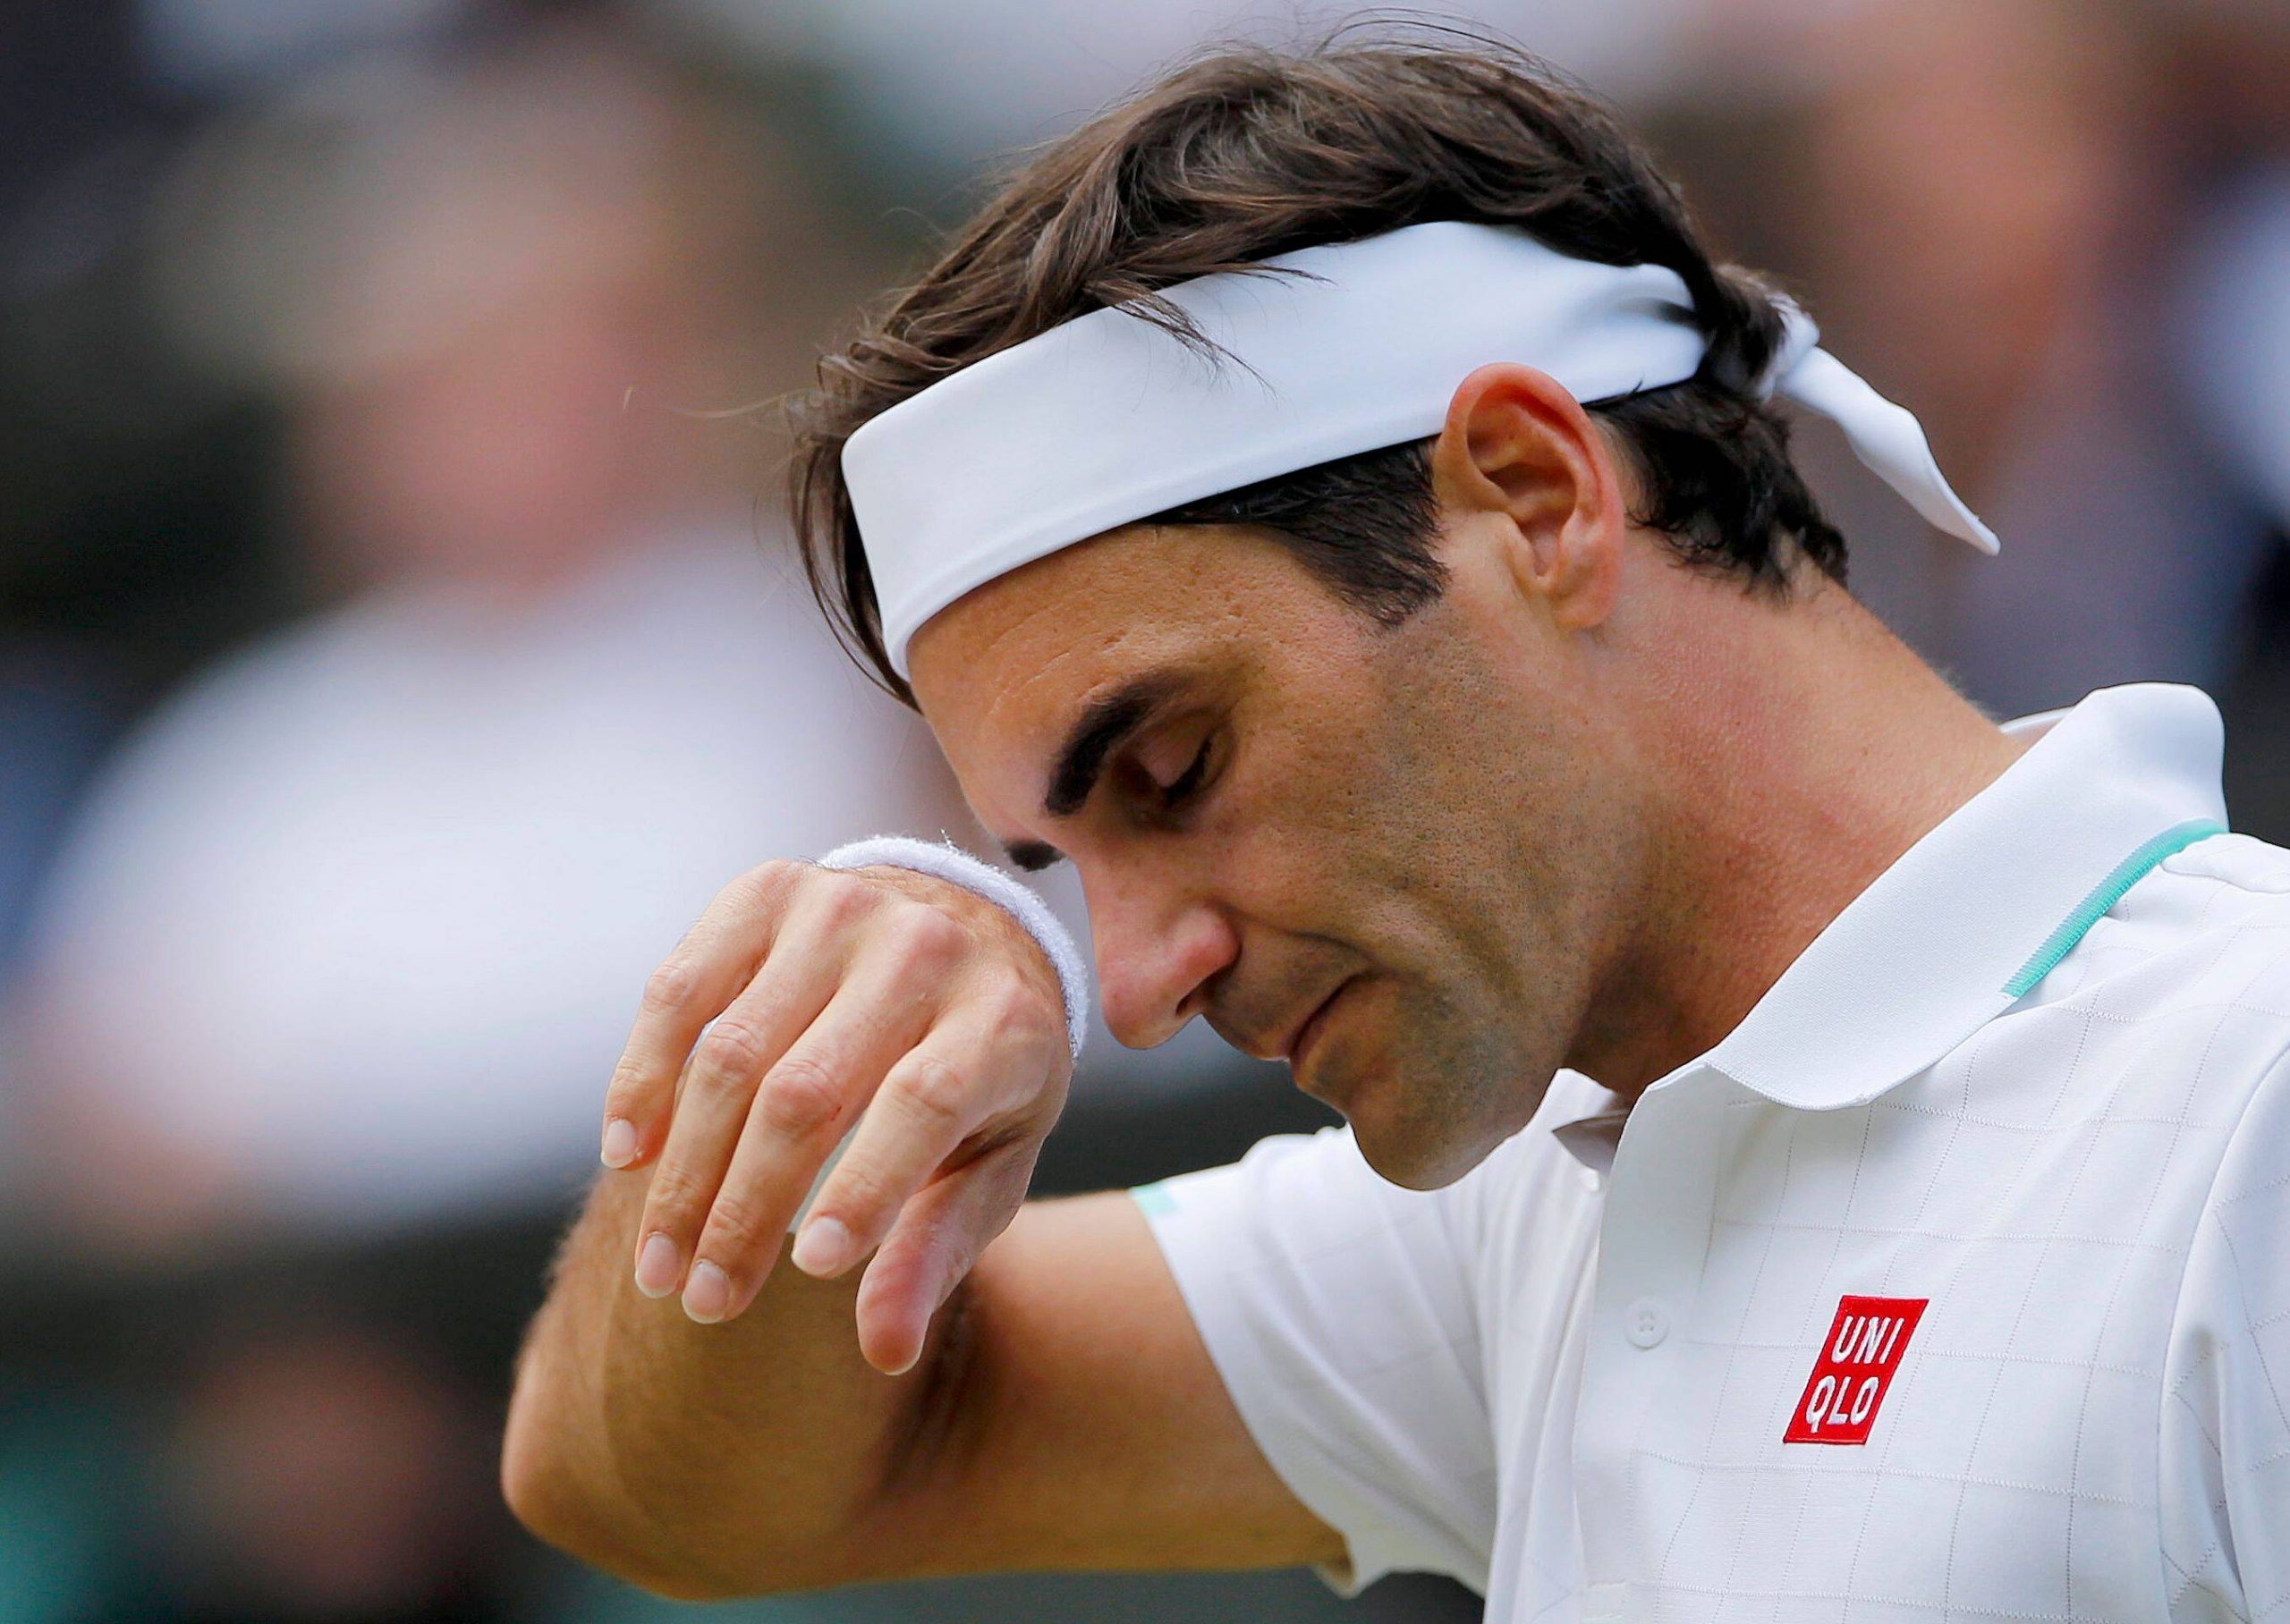 Für Tennis-Legende Roger Federer kam das Wimbledon-Aus im Viertelfinale